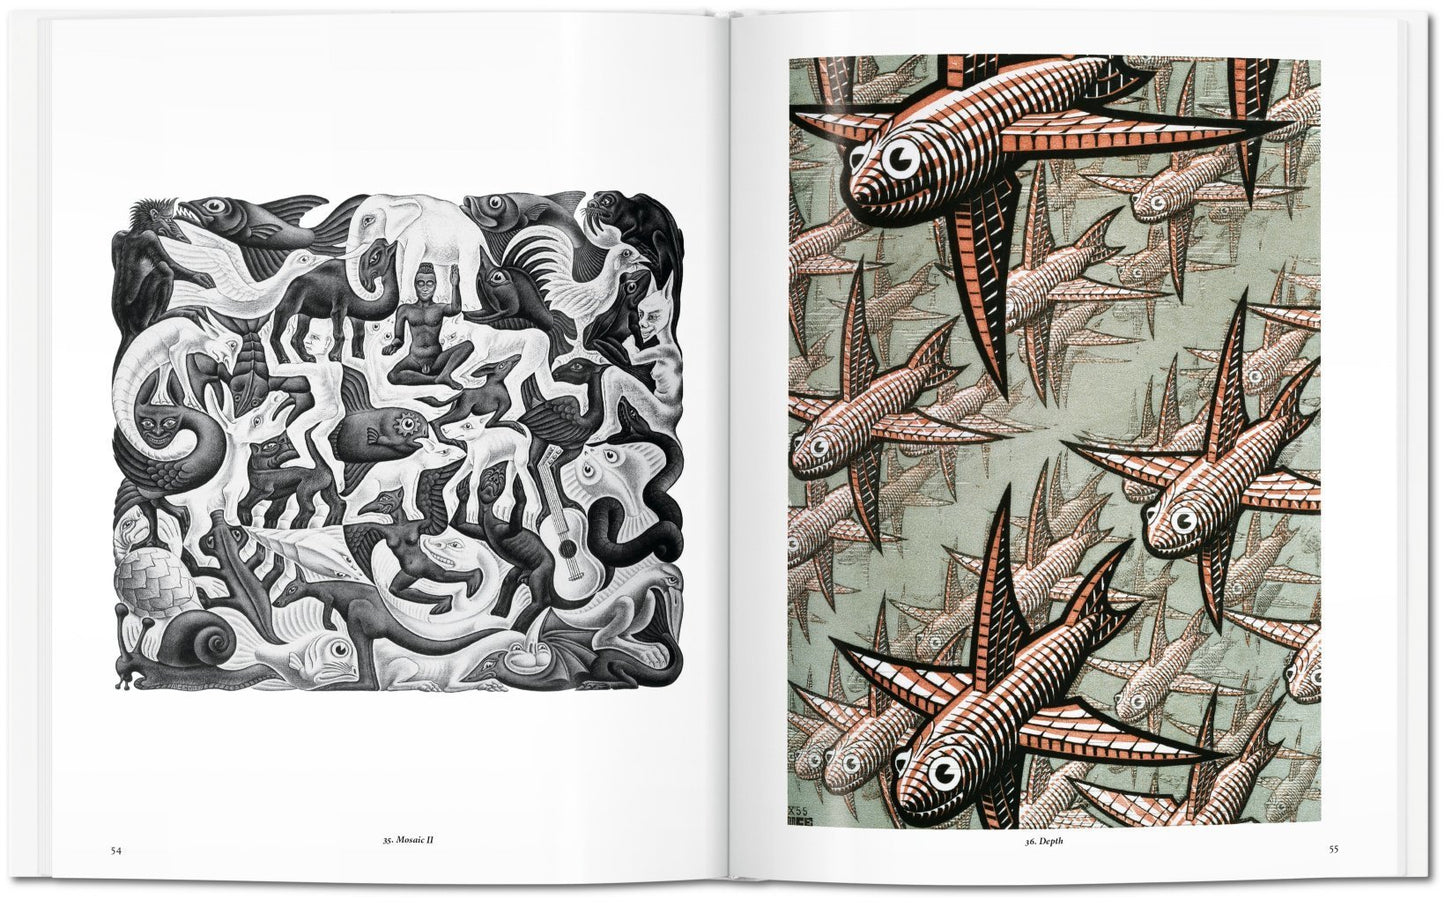 M. C. Escher: The Graphic Work